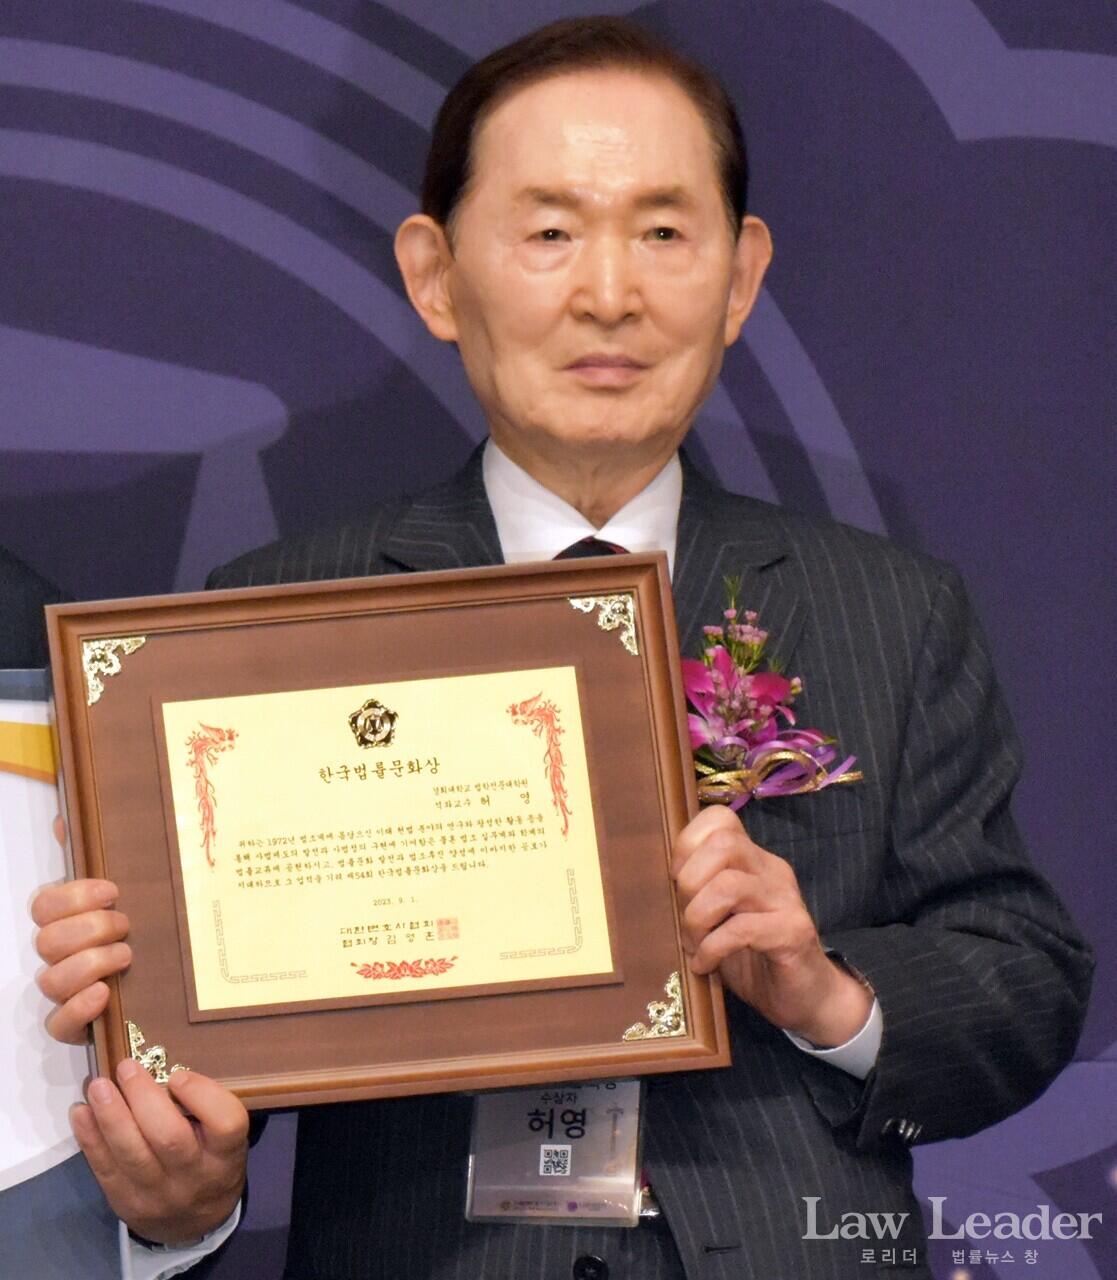 제54회 한국법률문화상을 수상한 허영 경희대 법학전문대학원(로스쿨) 석좌교수